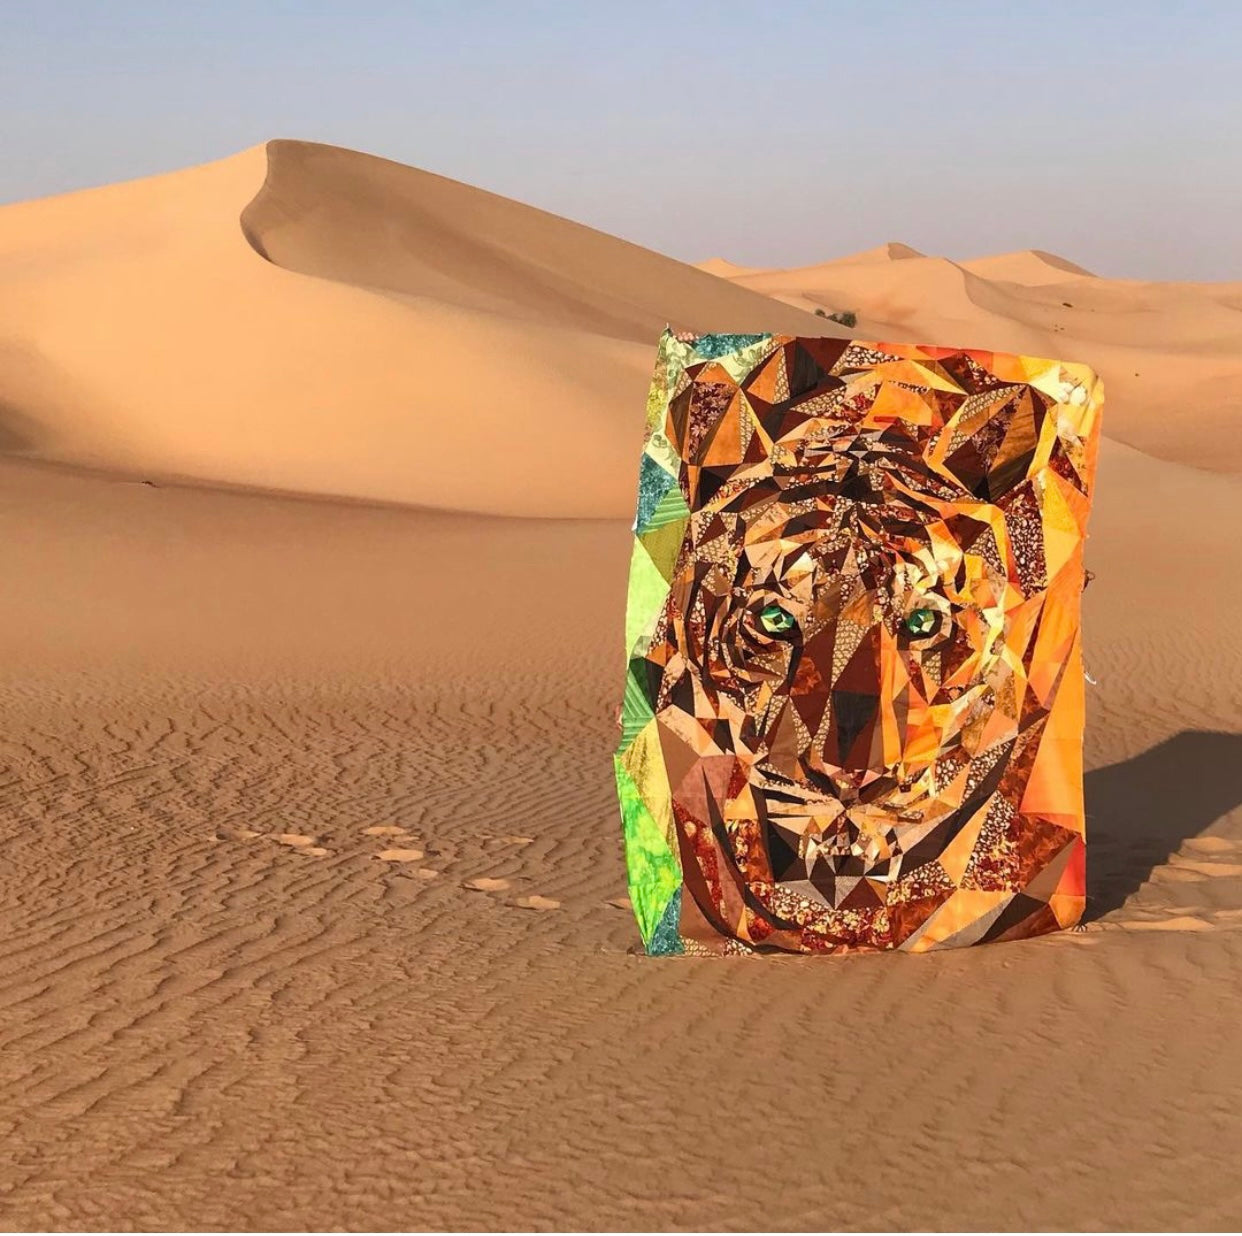 Legit tiger on display in the desert outside Dubai.